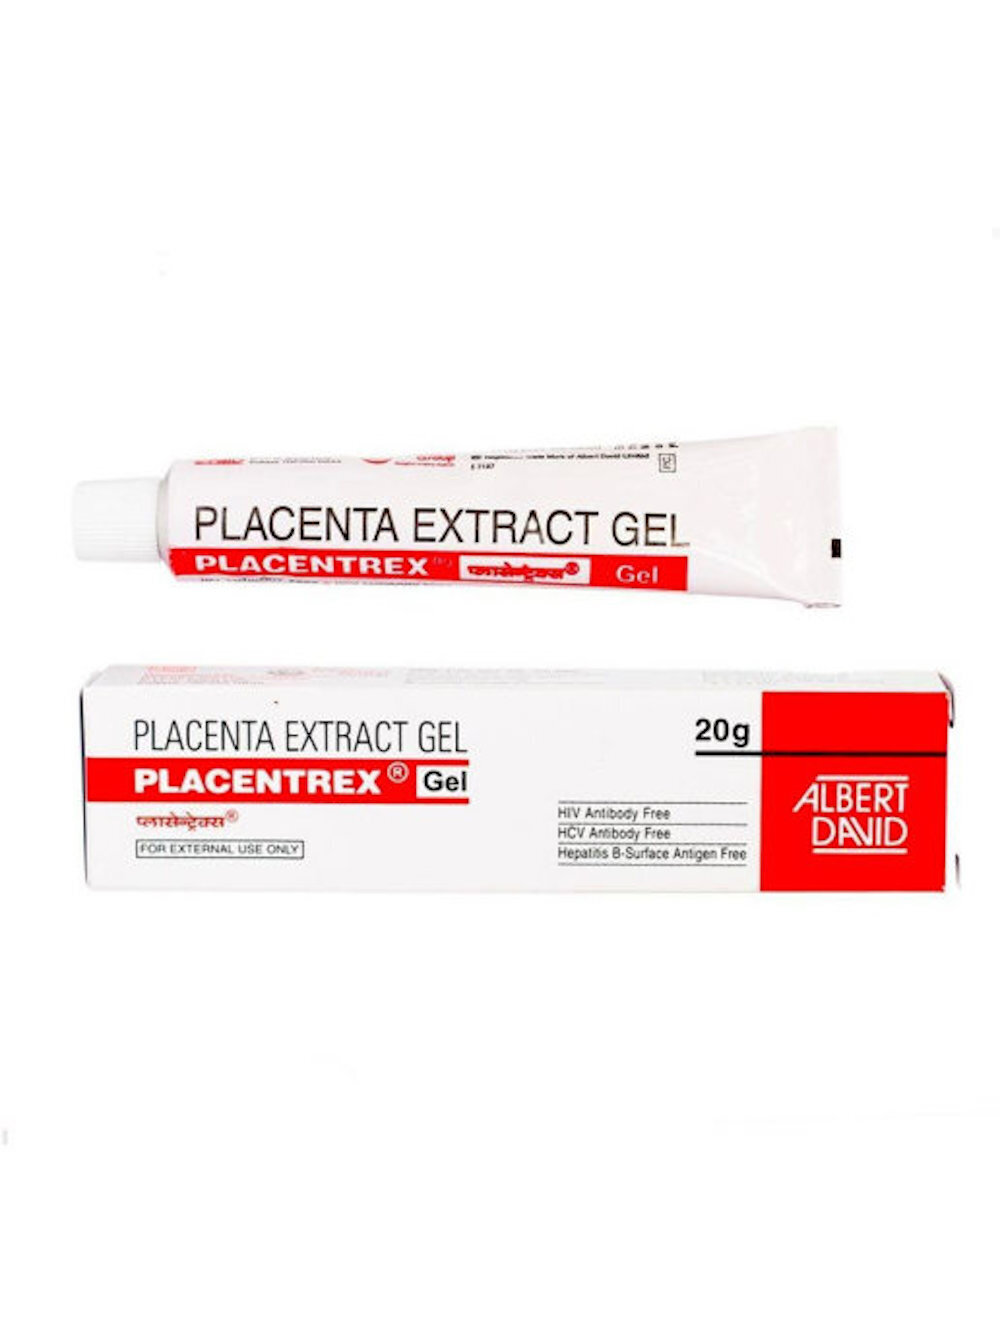 Placentrex gel. Гель с плацентой Placentrex 20. Albert David / гель "Placentrex placenta extract Gel. Placentrex Gel гель. Крем экстракт плаценты Индия.